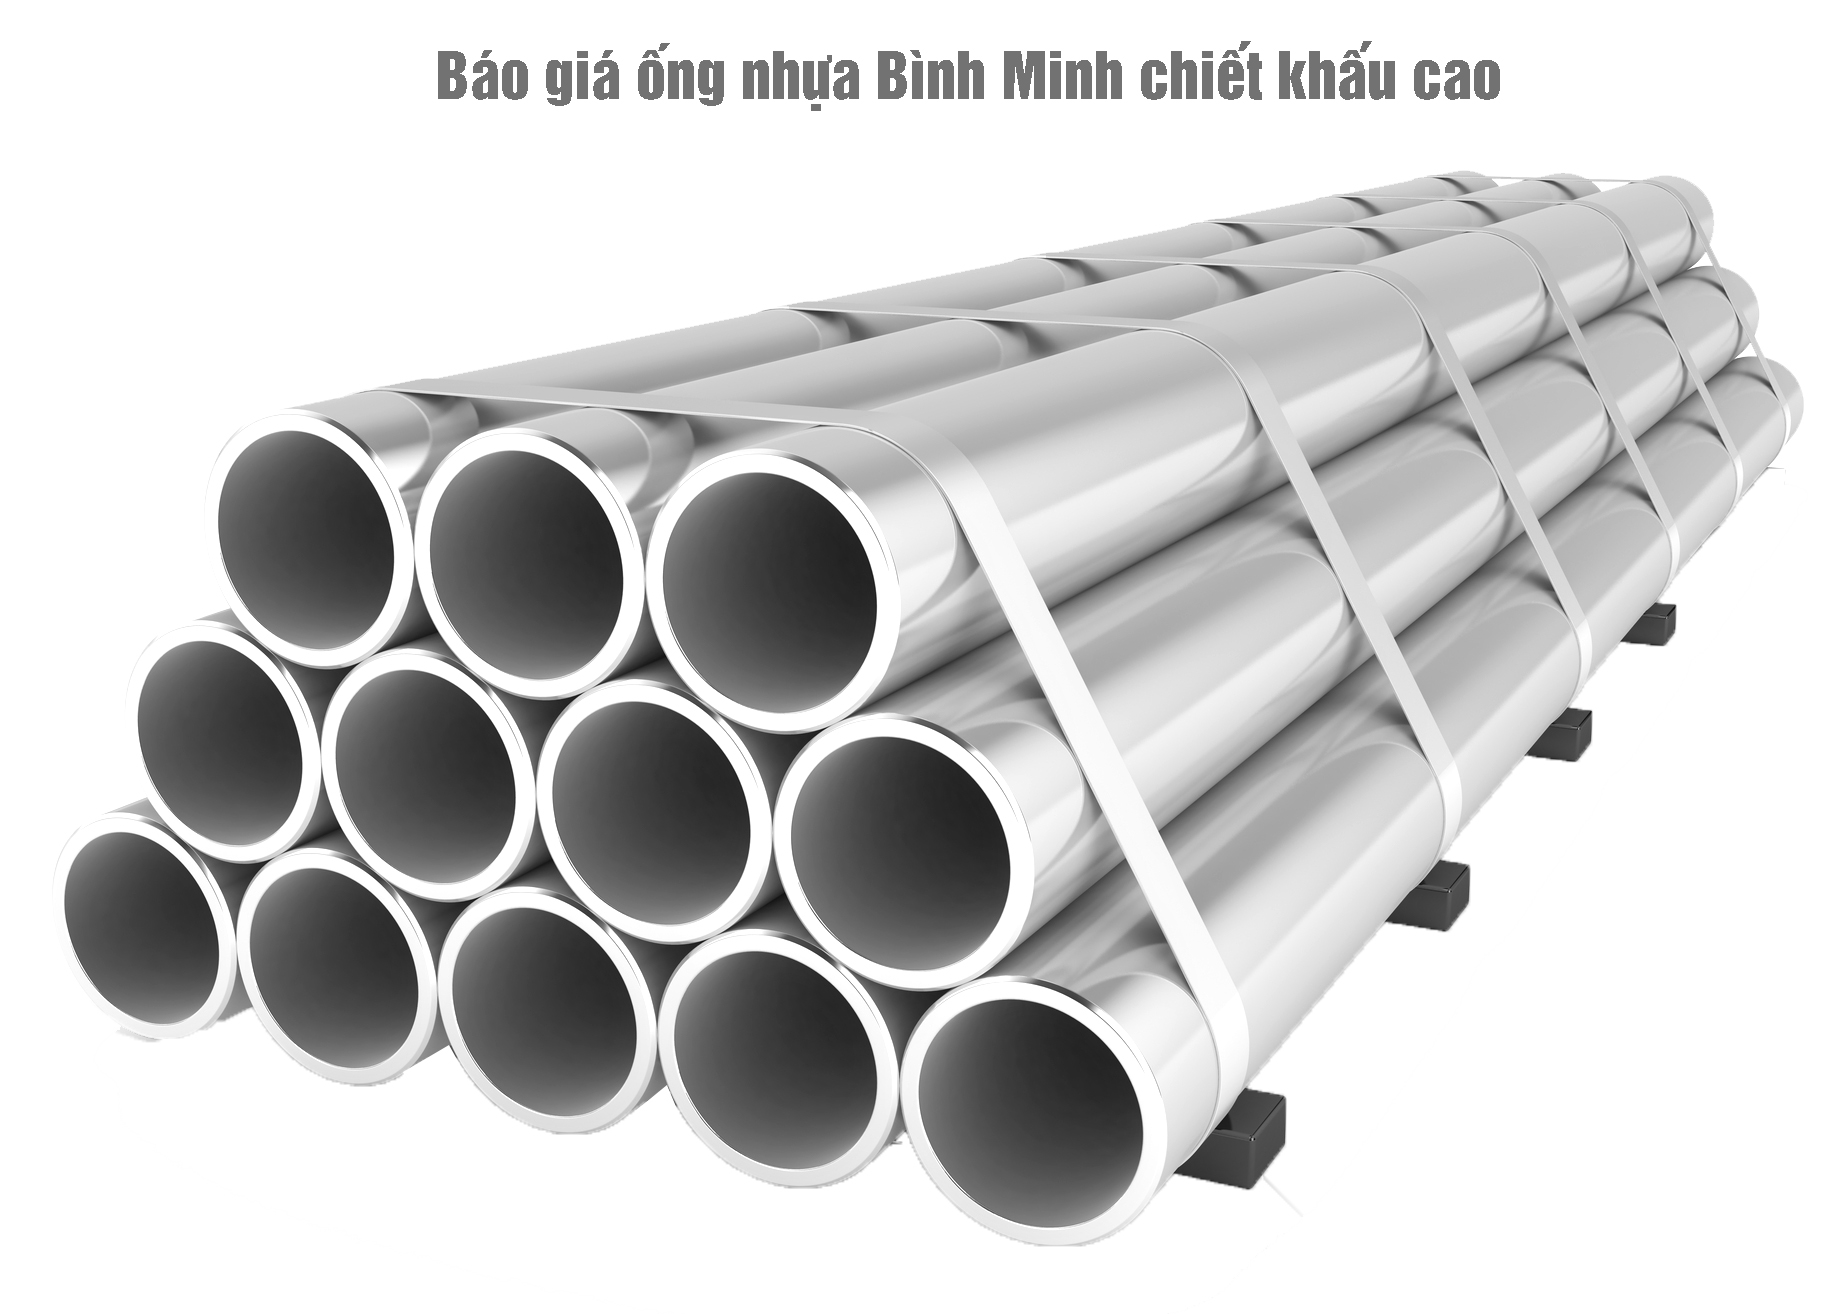 Báo giá ống nhựa Bình Minh chiết khấu cao